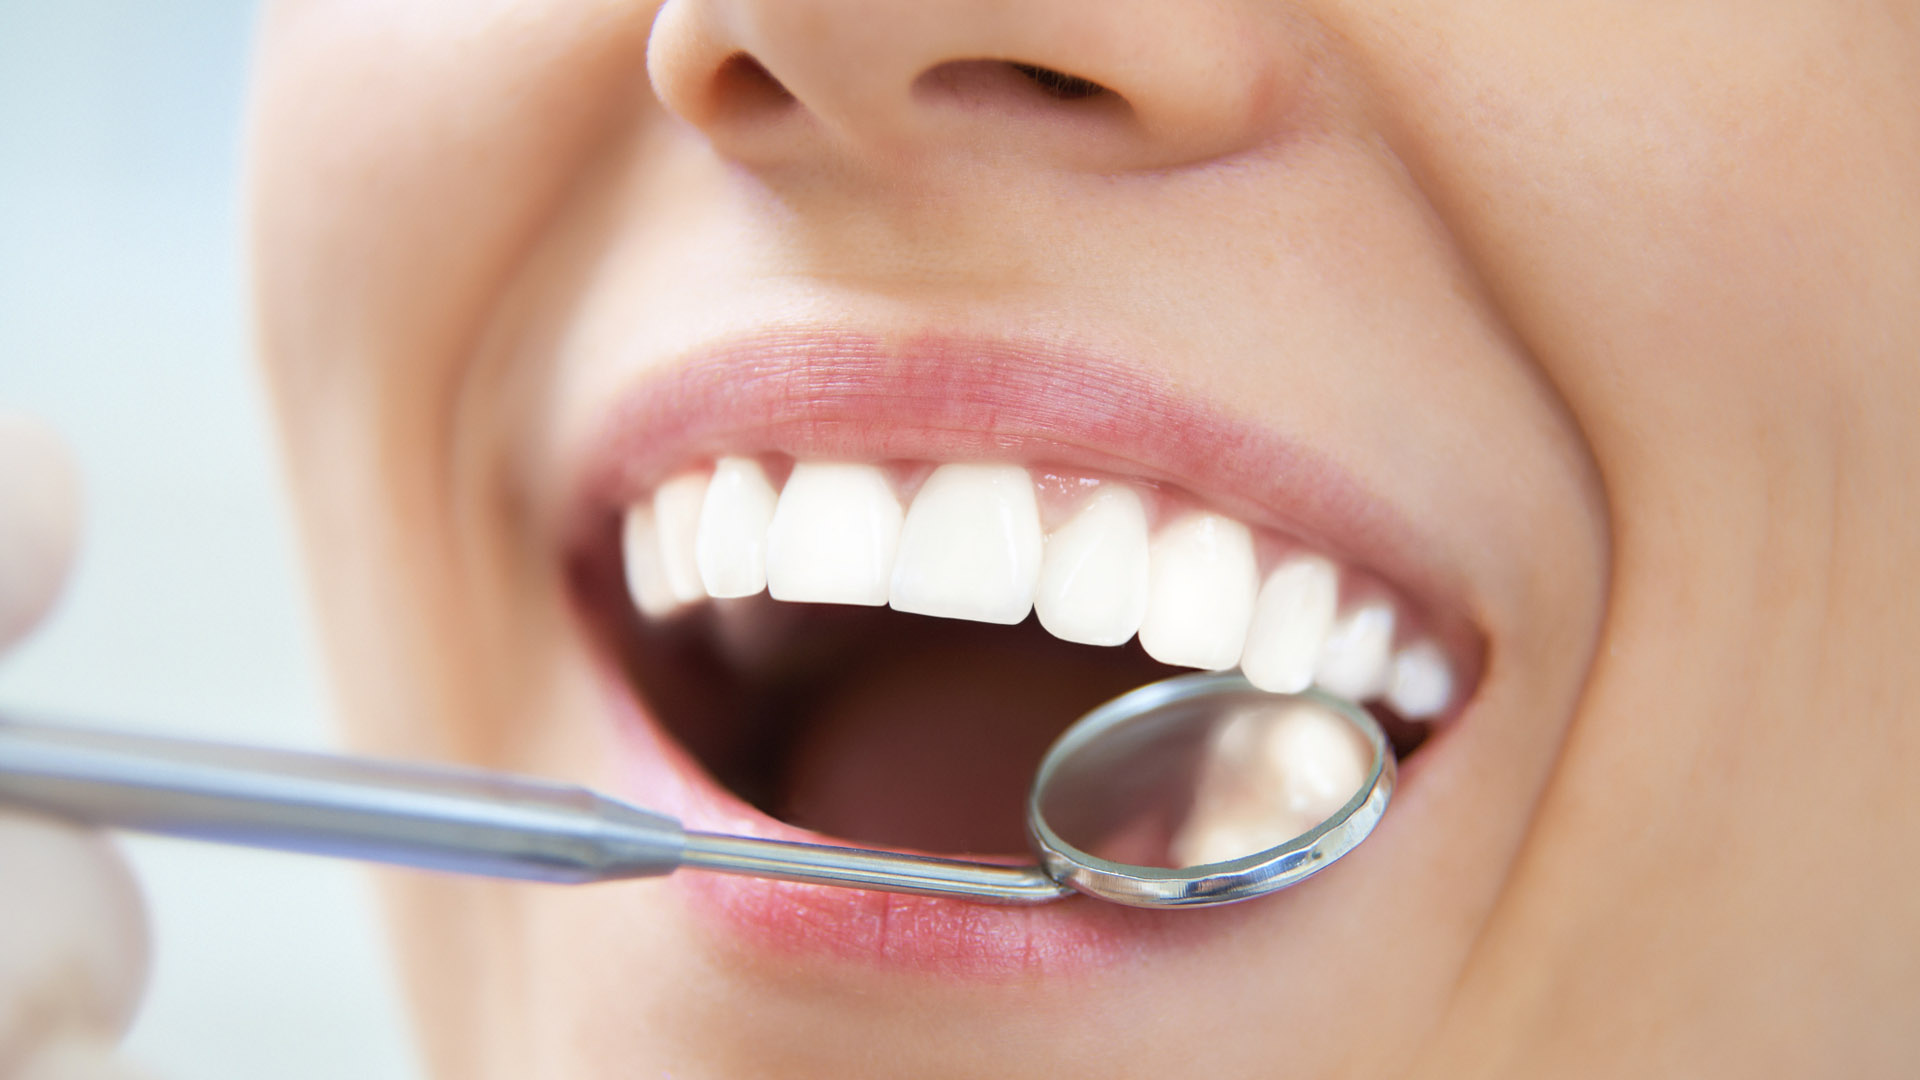 Acudir al dentistas 2 veces por año es lo más recomendado para la salud dental, esto y dejar esos malos hábitos te haran lucir dientes de revista